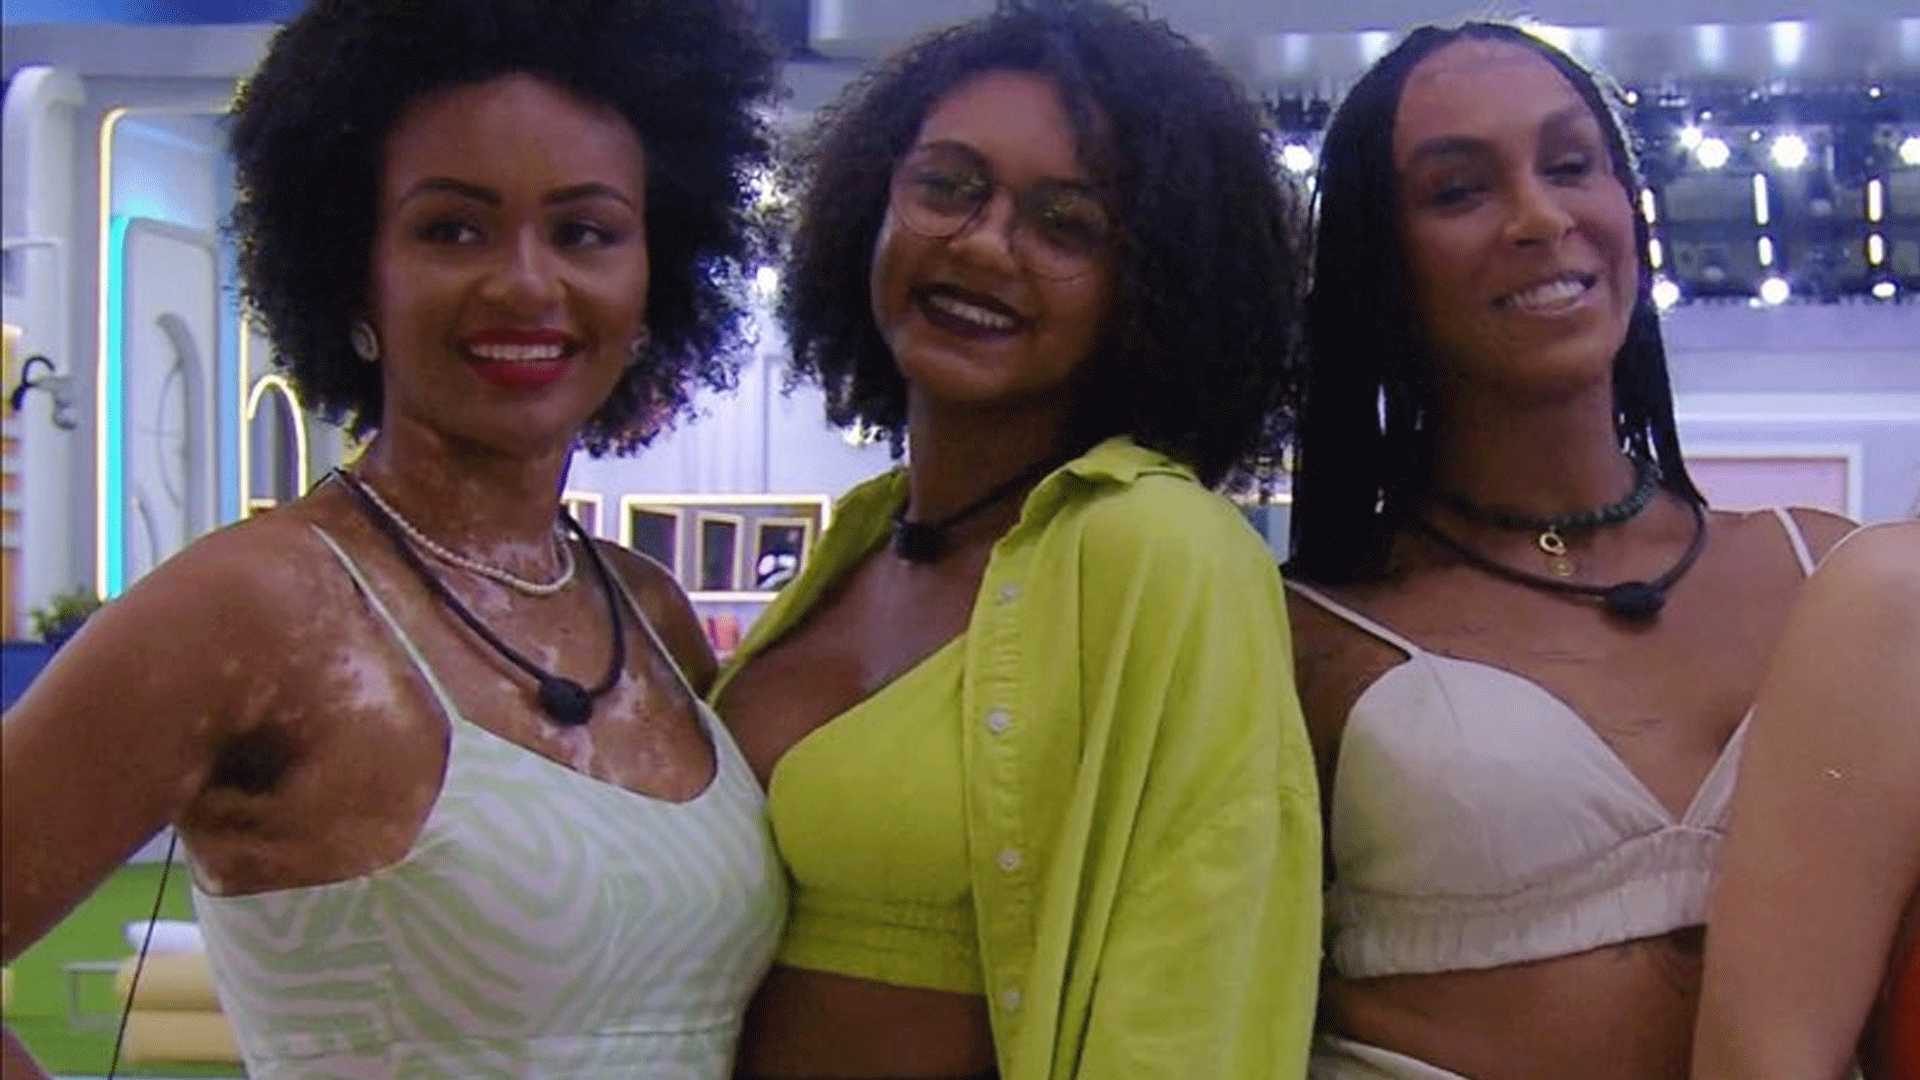 BBB22: Jessilane, Natália e Linn tiram a roupa e pulam na piscina fazendo topless ao vivo: “Madrugada quente” - Metropolitana FM